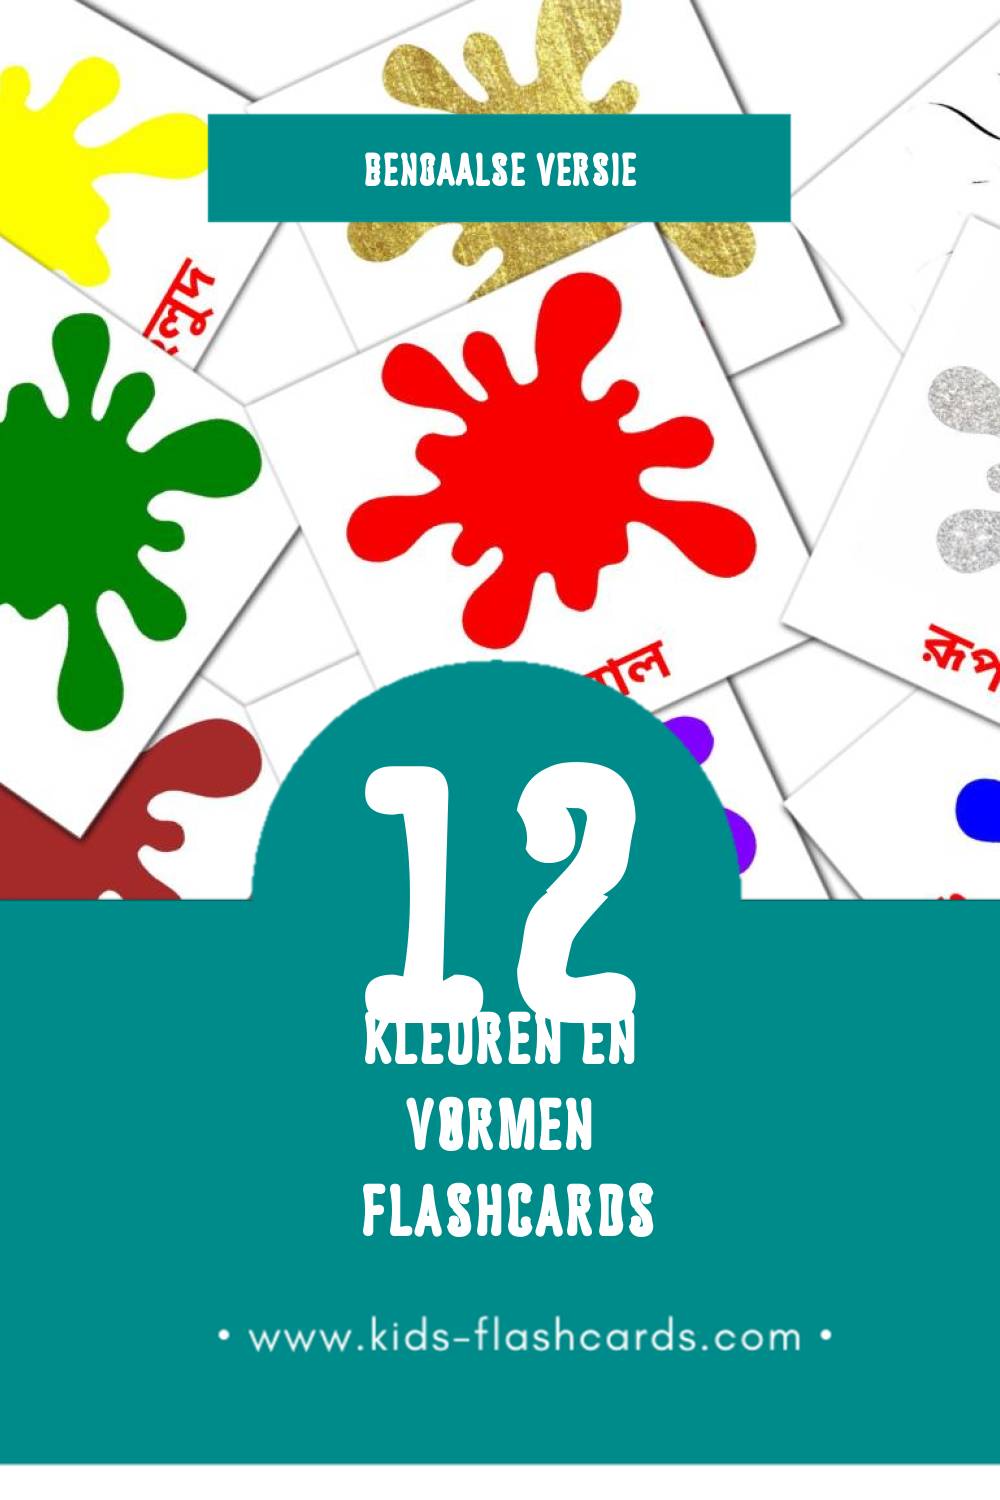 Visuele রং ও আকৃতি  Flashcards voor Kleuters (12 kaarten in het Bengaals)